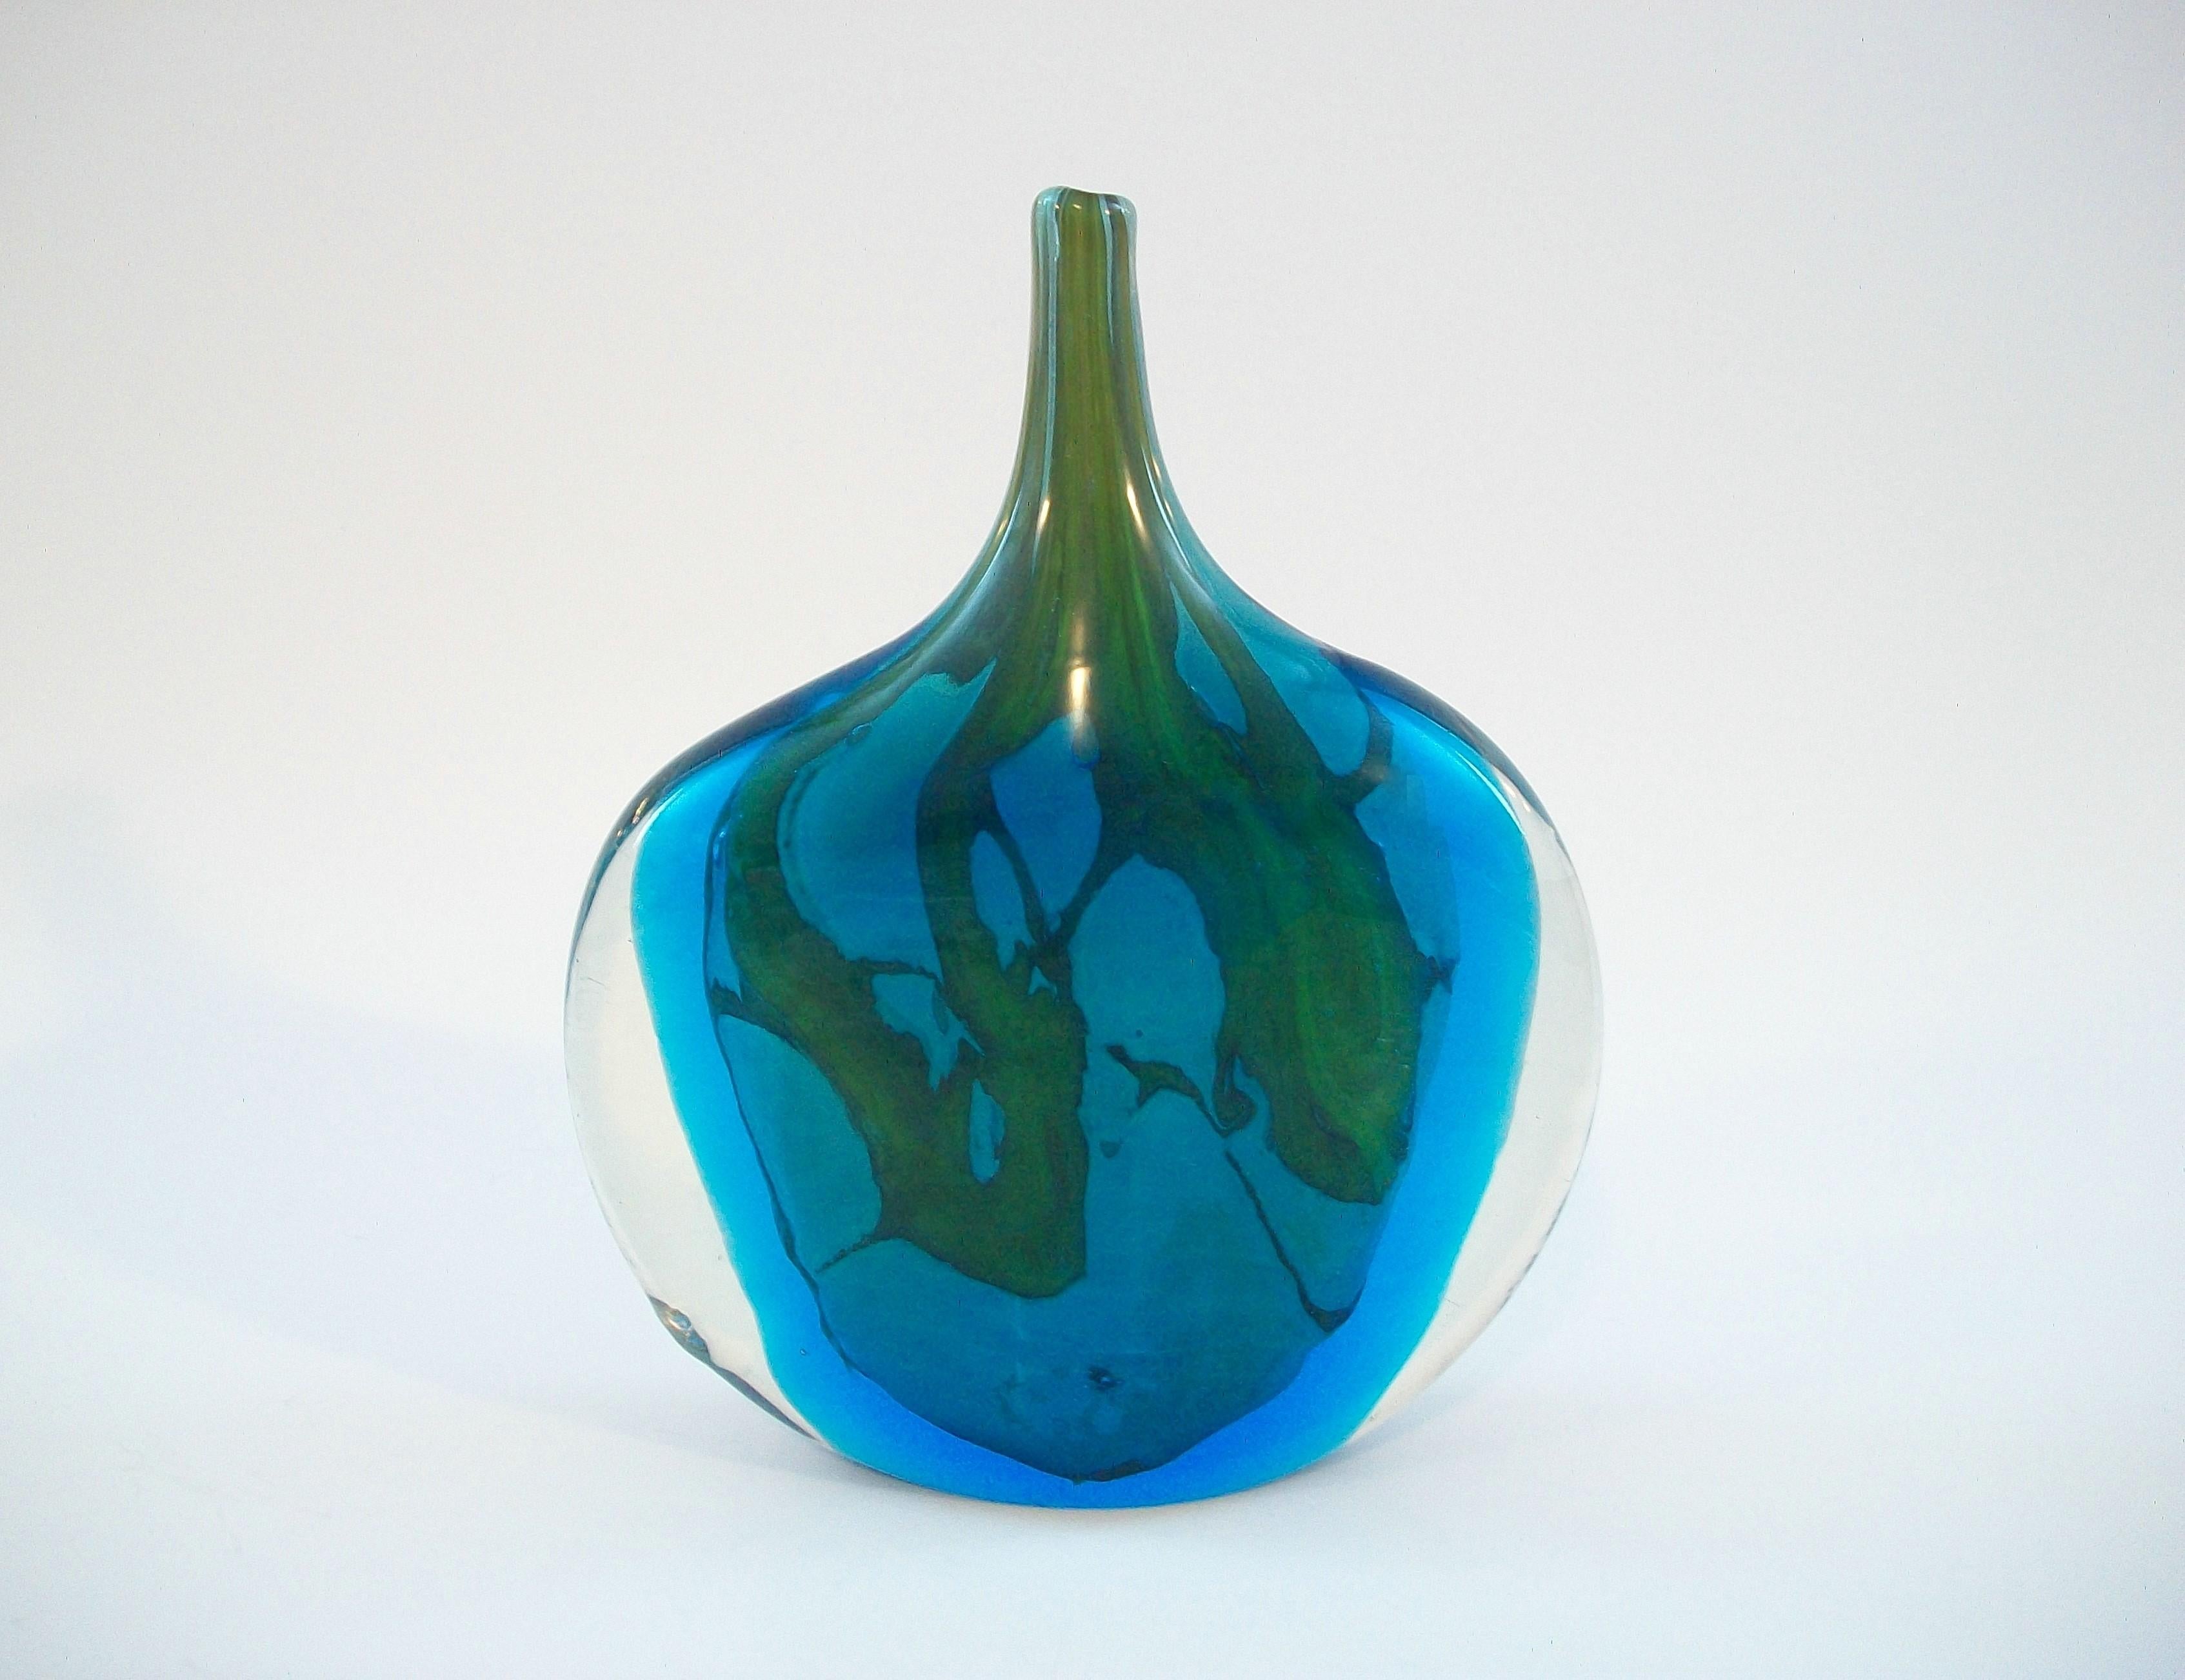 Maltese MDINA - MICHAEL HARRIS - Glass Fish Vase - Unsigned - Malta - Circa 1970's For Sale